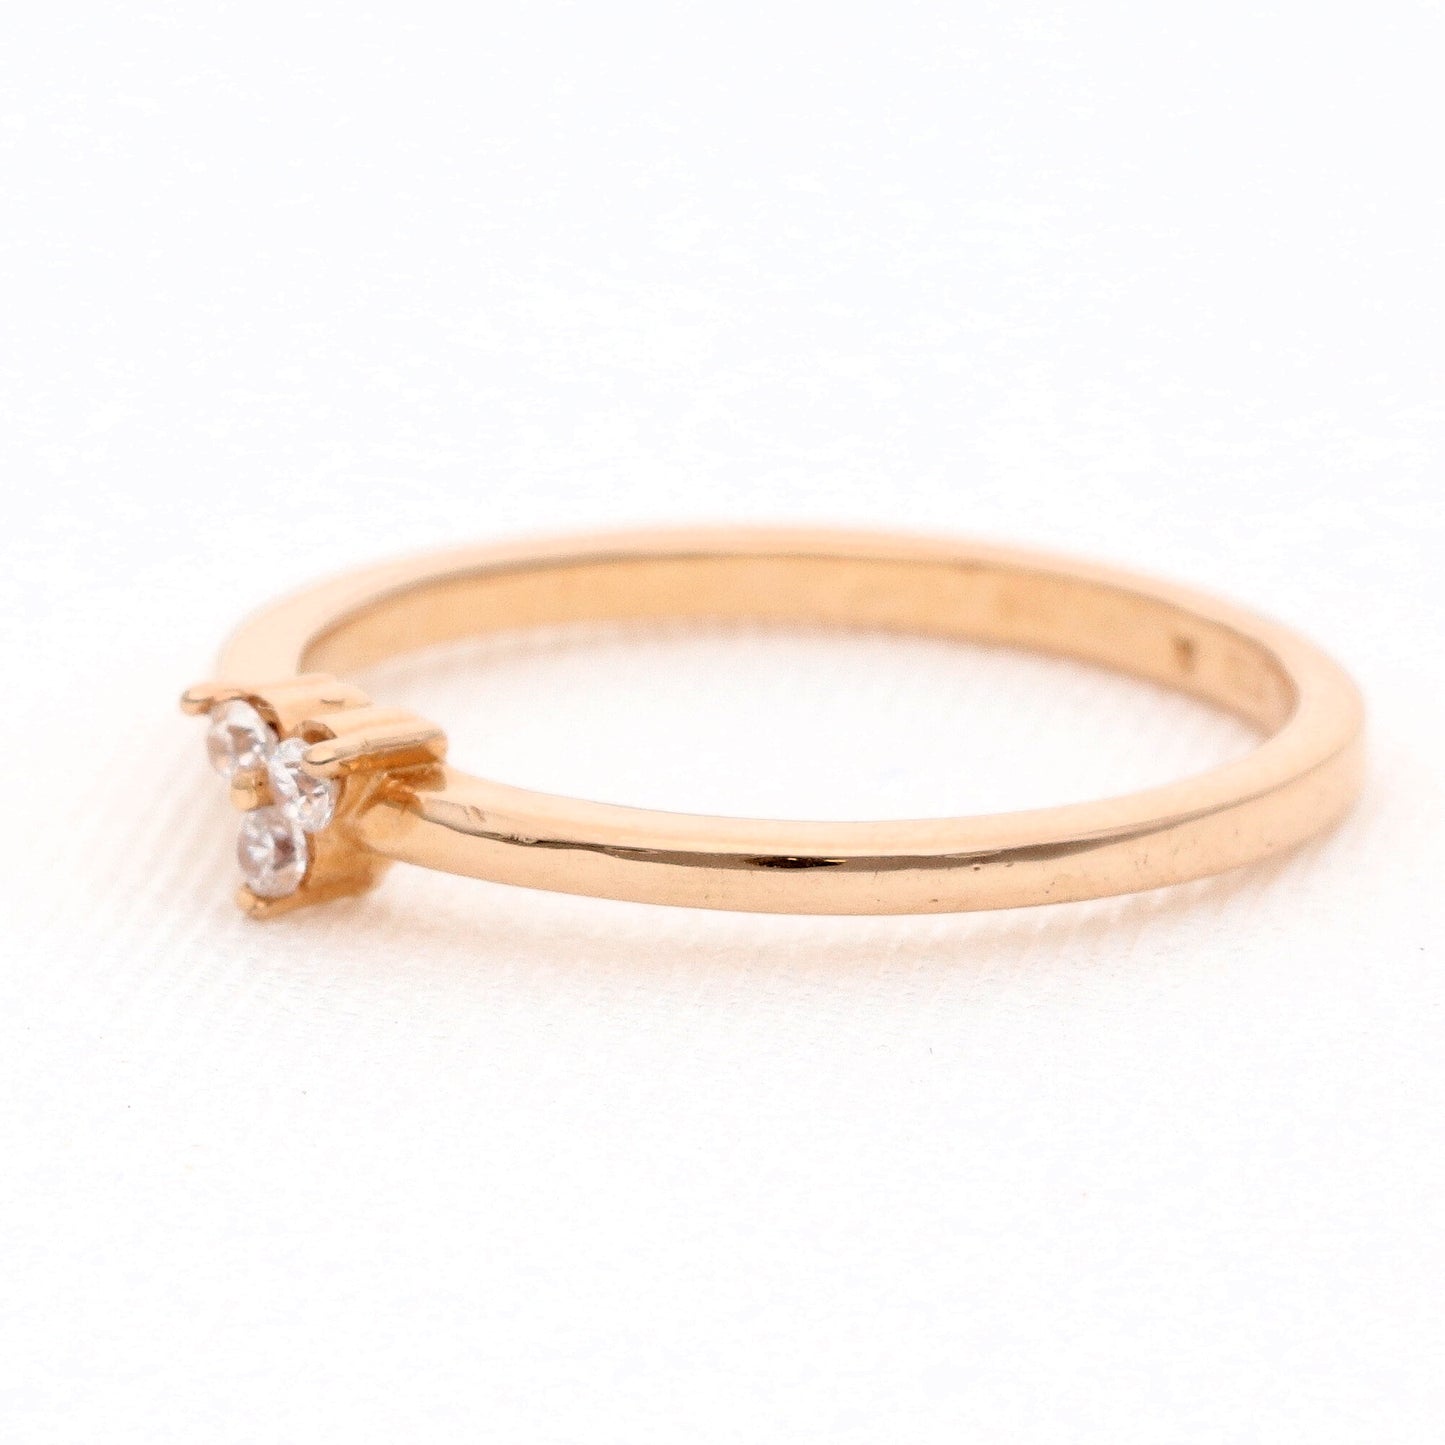 Auksinis žiedas modelis Sėkmės trikampis vestuviniaiziedai.lt